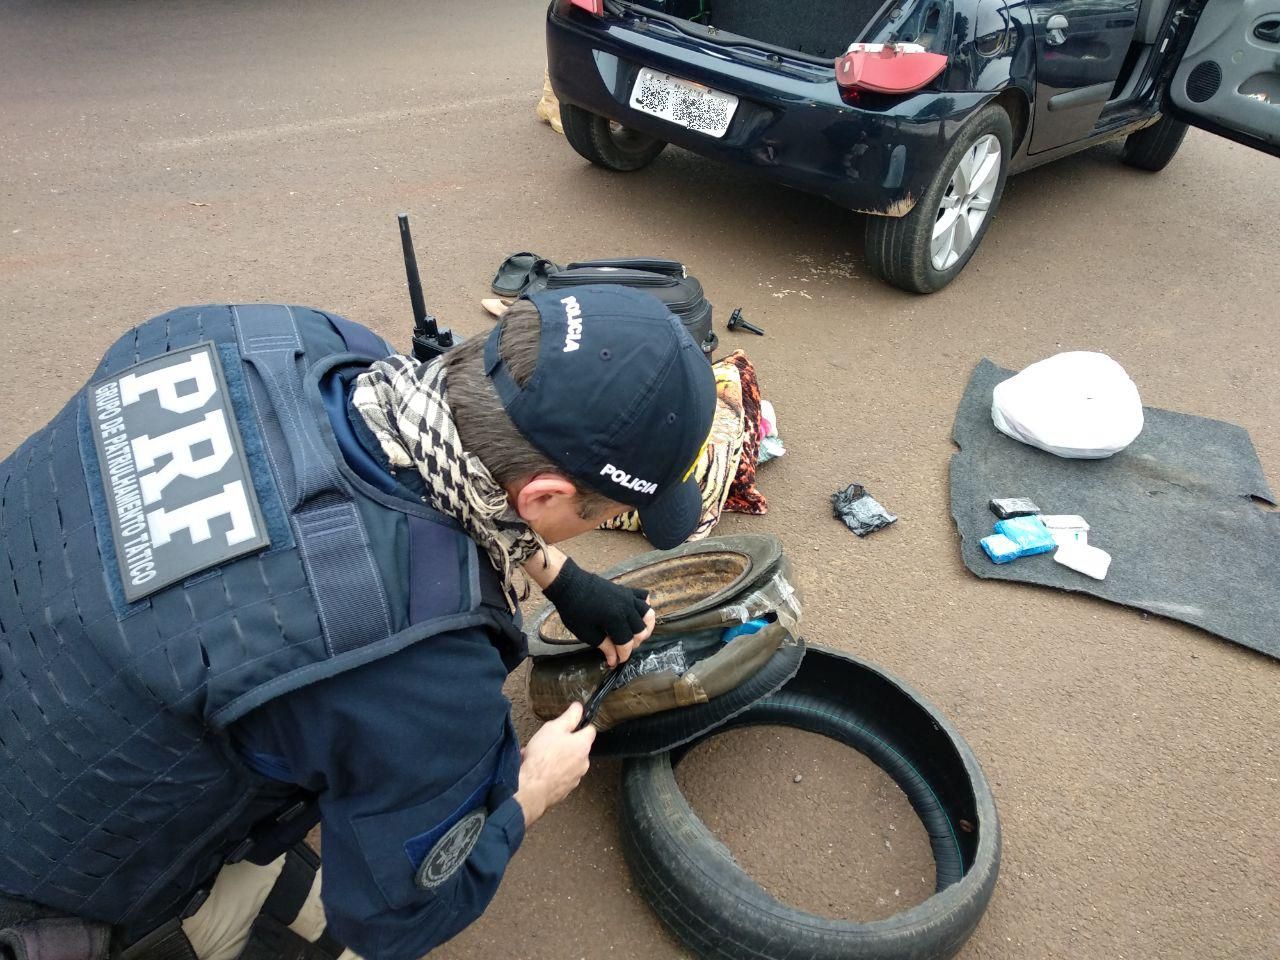  Polícia apreende medicamentos escondidos em estepe de carro